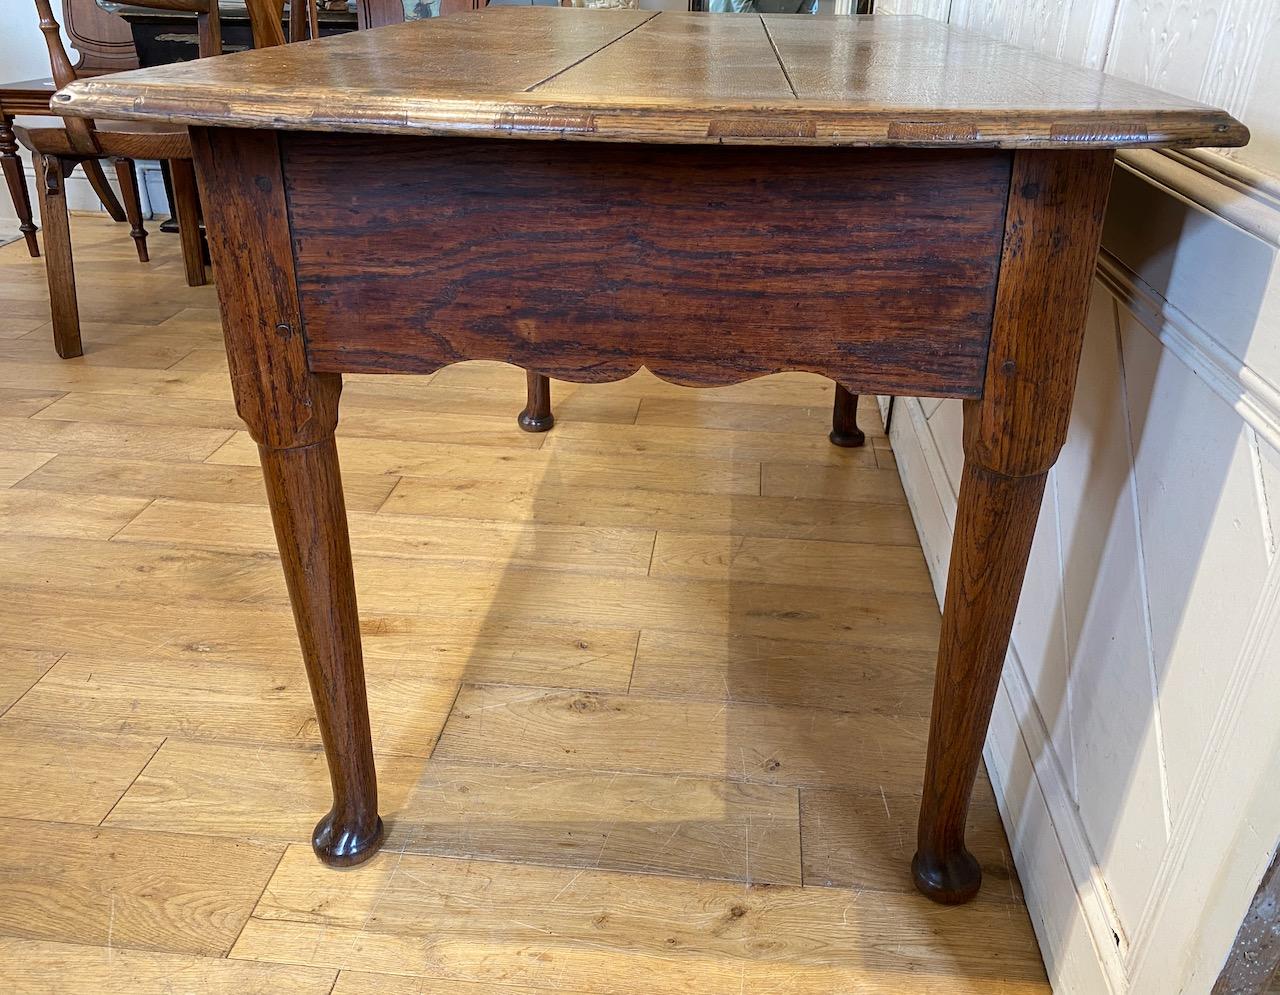 George II Oak Side Table